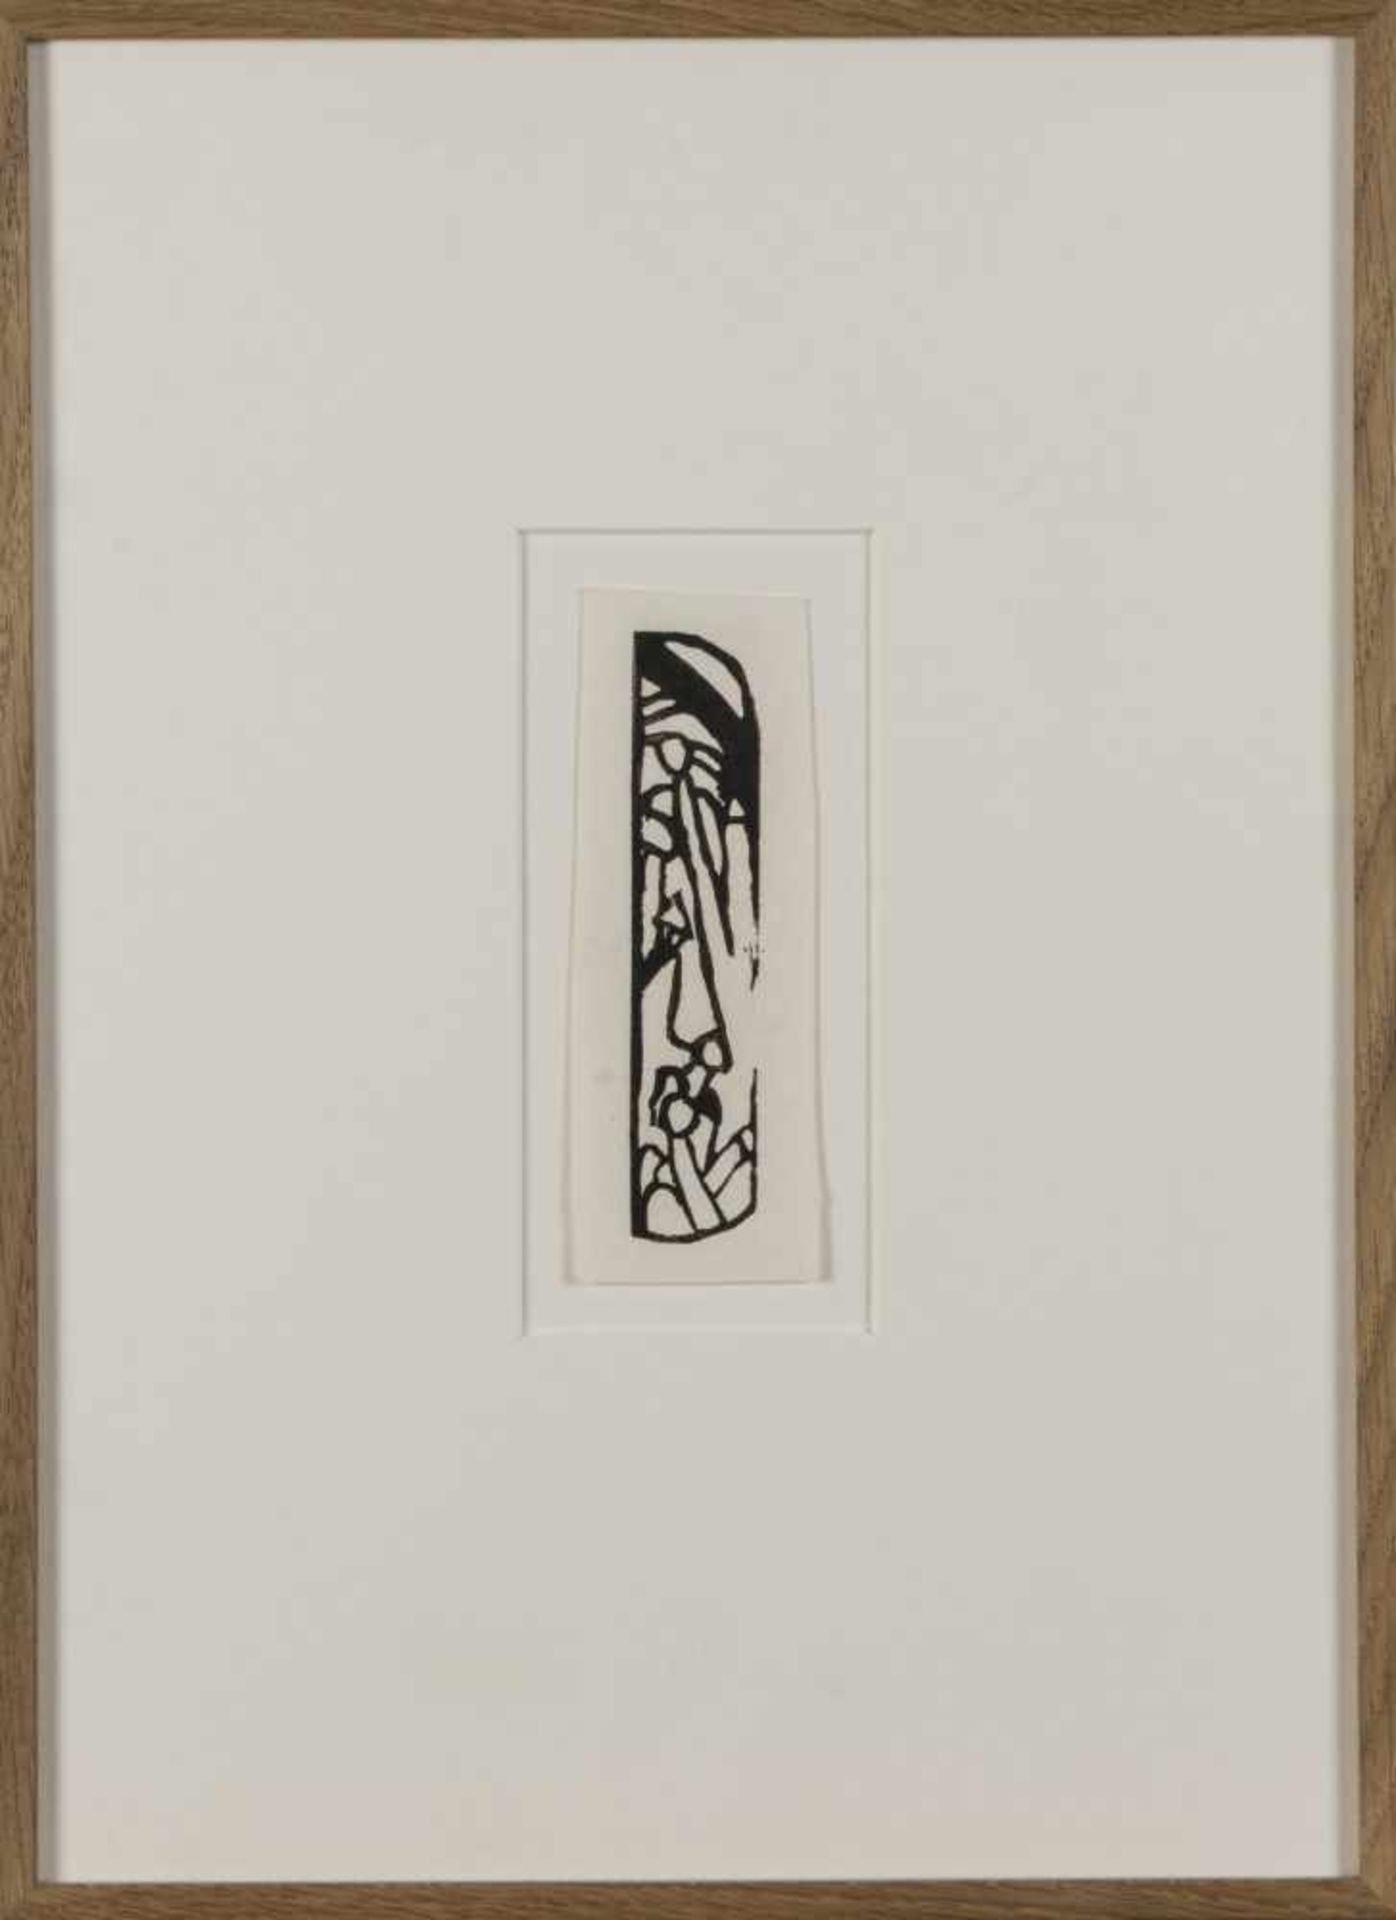 Wassily Kandinsky, 9 vignettes from 'Über das Geistige in der Kunst' and 'Klänge', all 19119